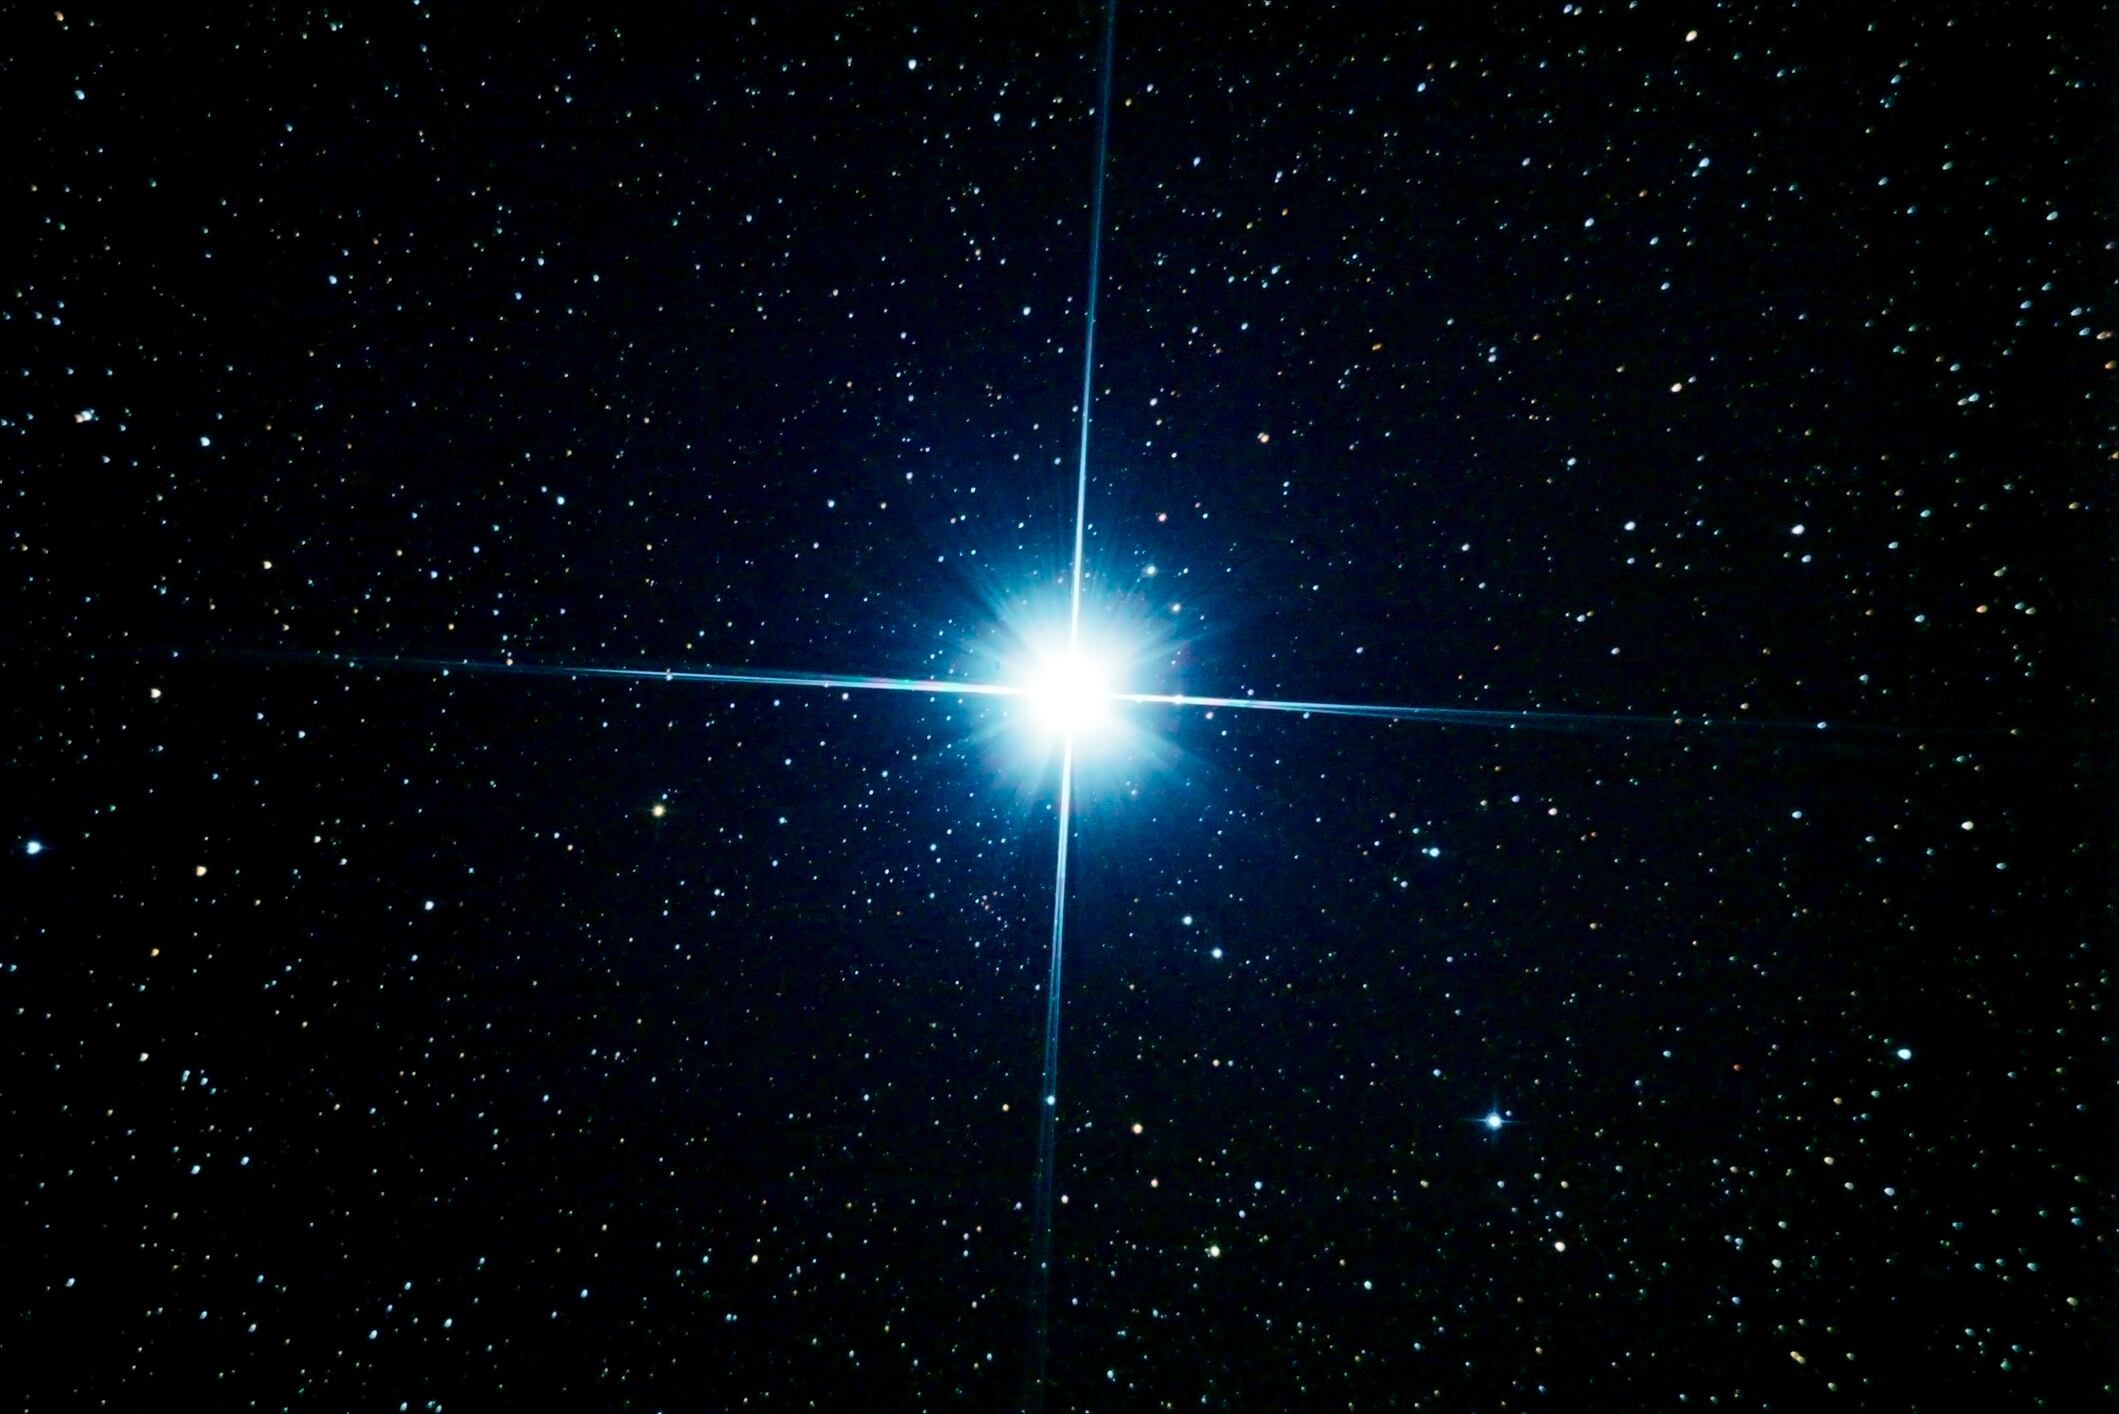 fu orionis: la ciencia logra explicar misterio astronómico de 88 años de un sistema estelar